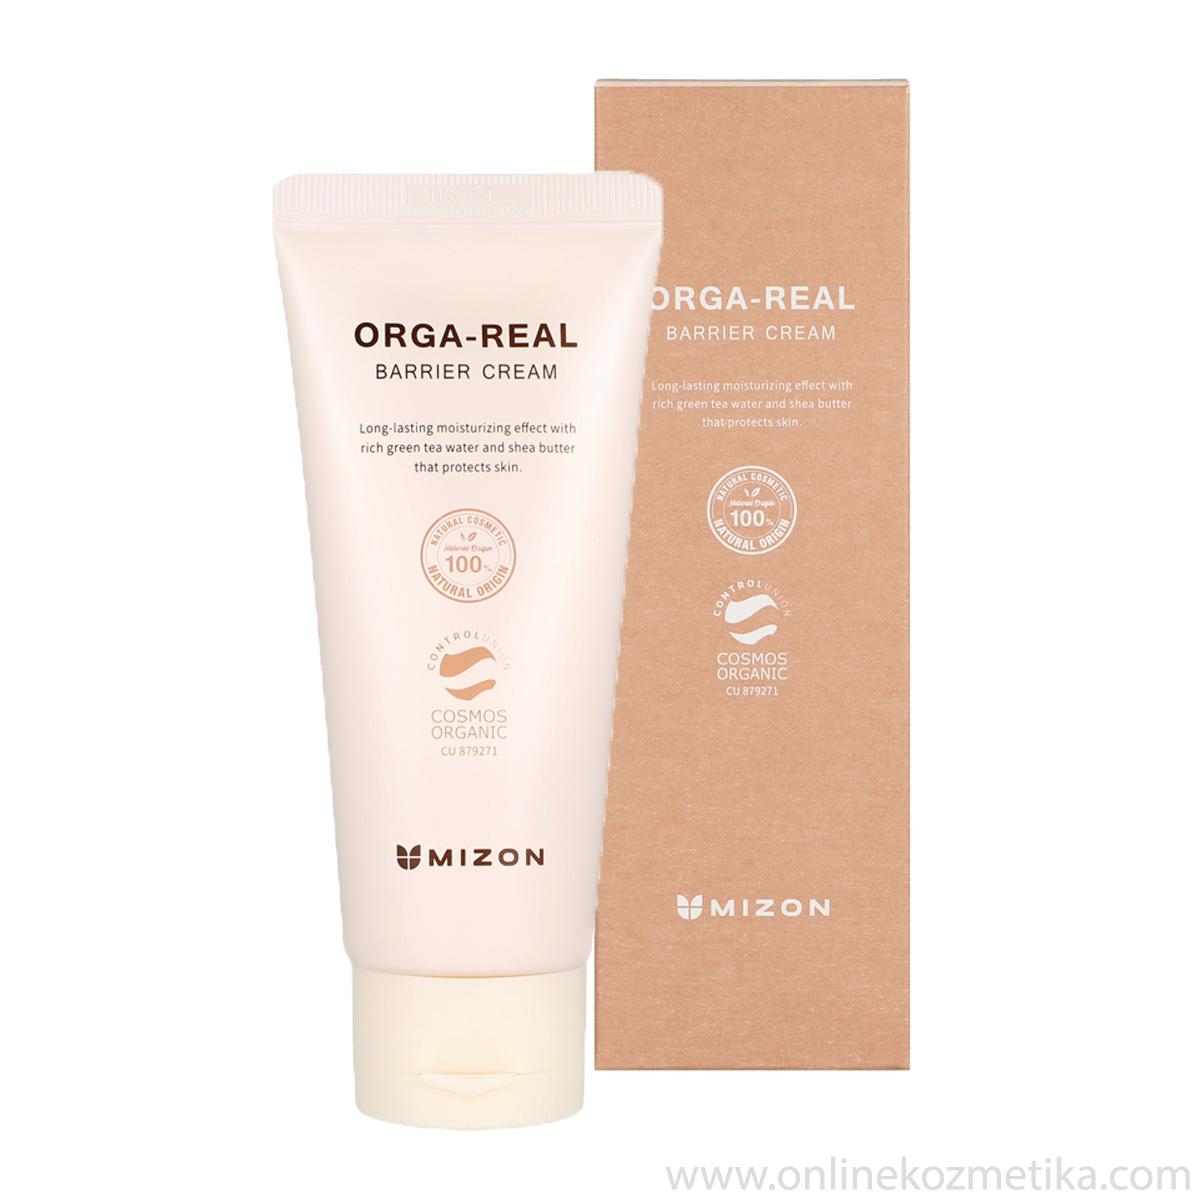 Mizon Orga-Real Barrier Cream 100ml 